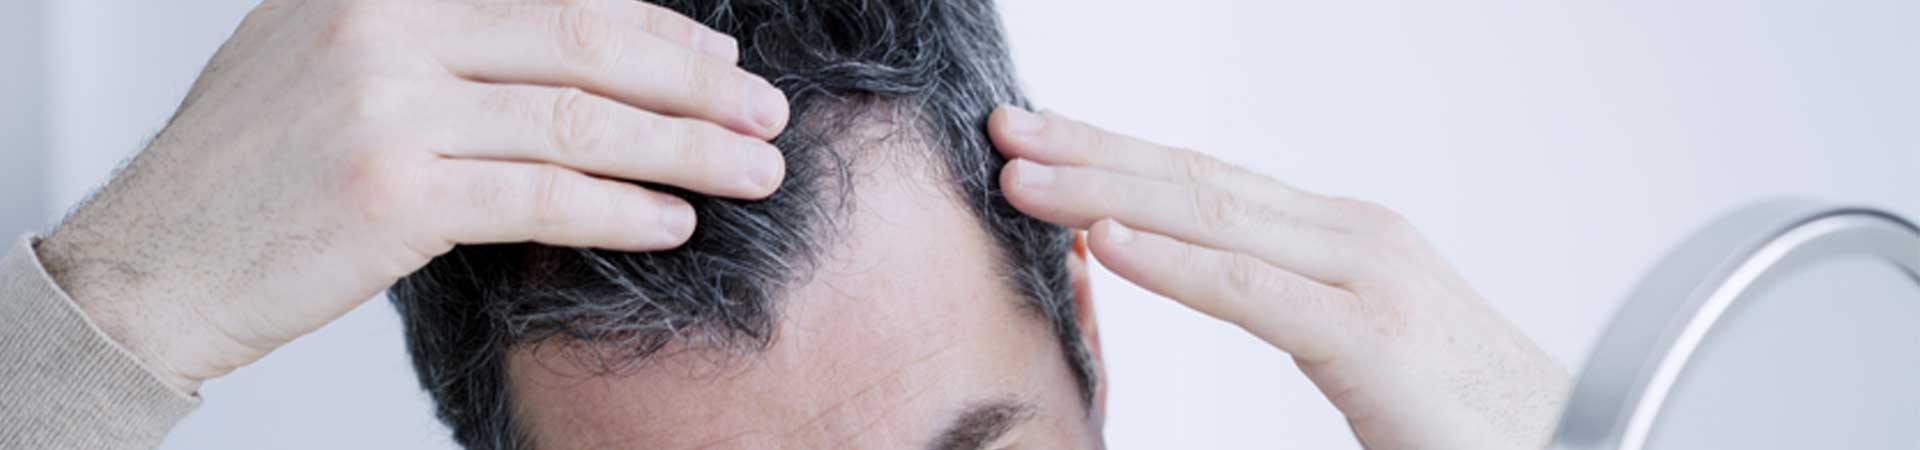 Haarverlustberatung & Diagnose